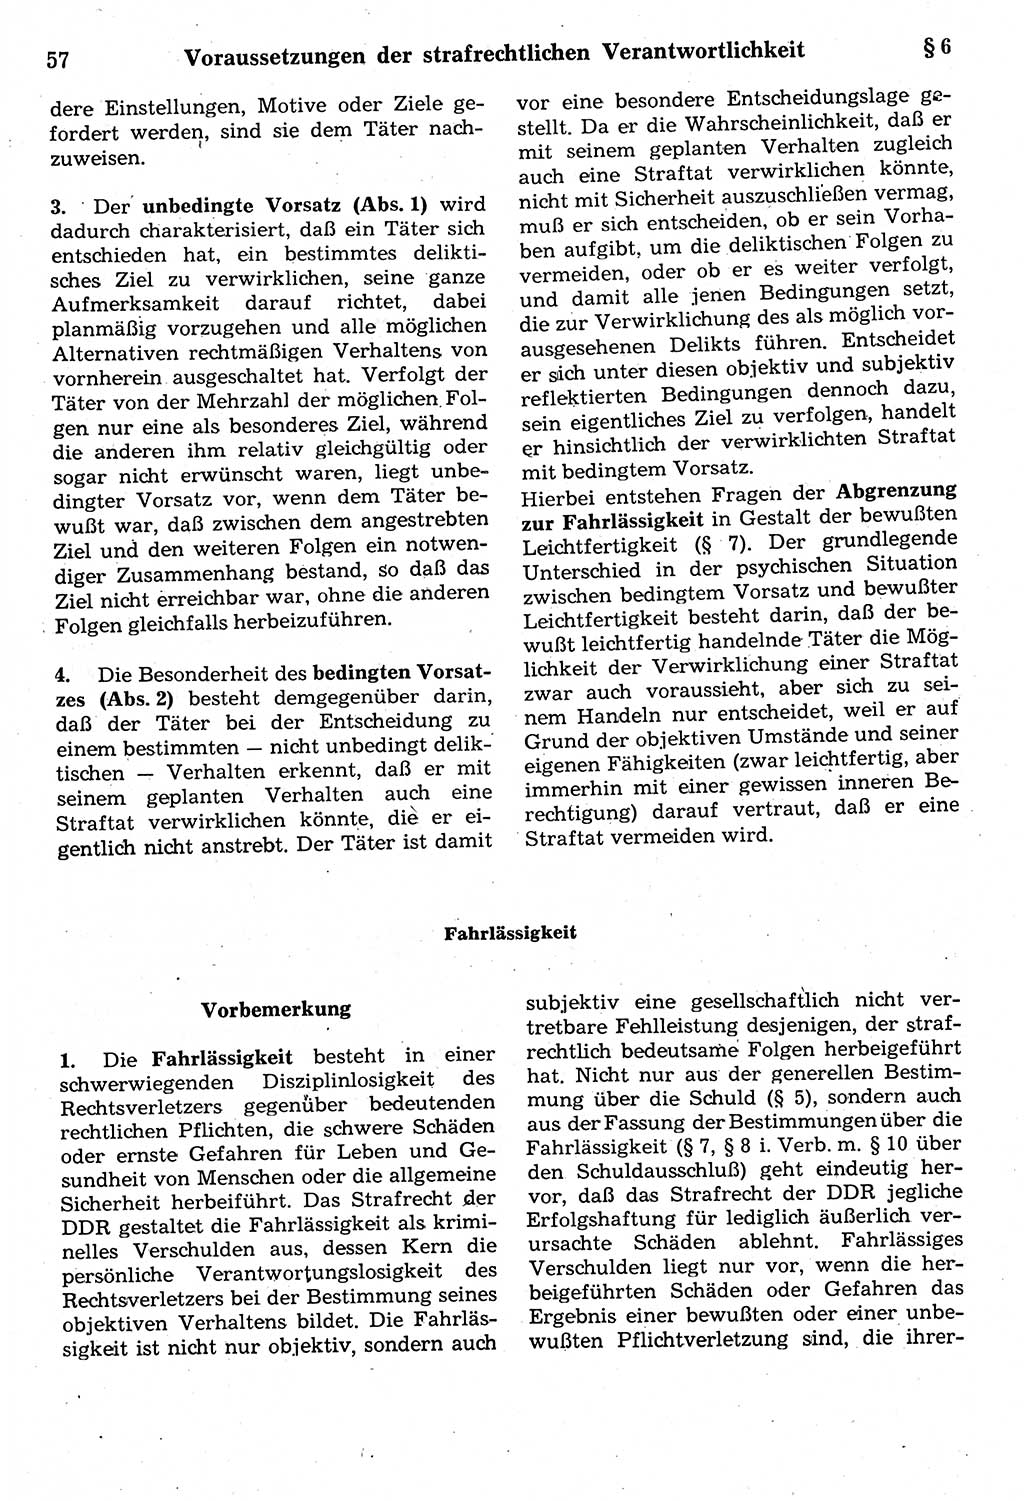 Strafrecht der Deutschen Demokratischen Republik (DDR), Kommentar zum Strafgesetzbuch (StGB) 1987, Seite 57 (Strafr. DDR Komm. StGB 1987, S. 57)